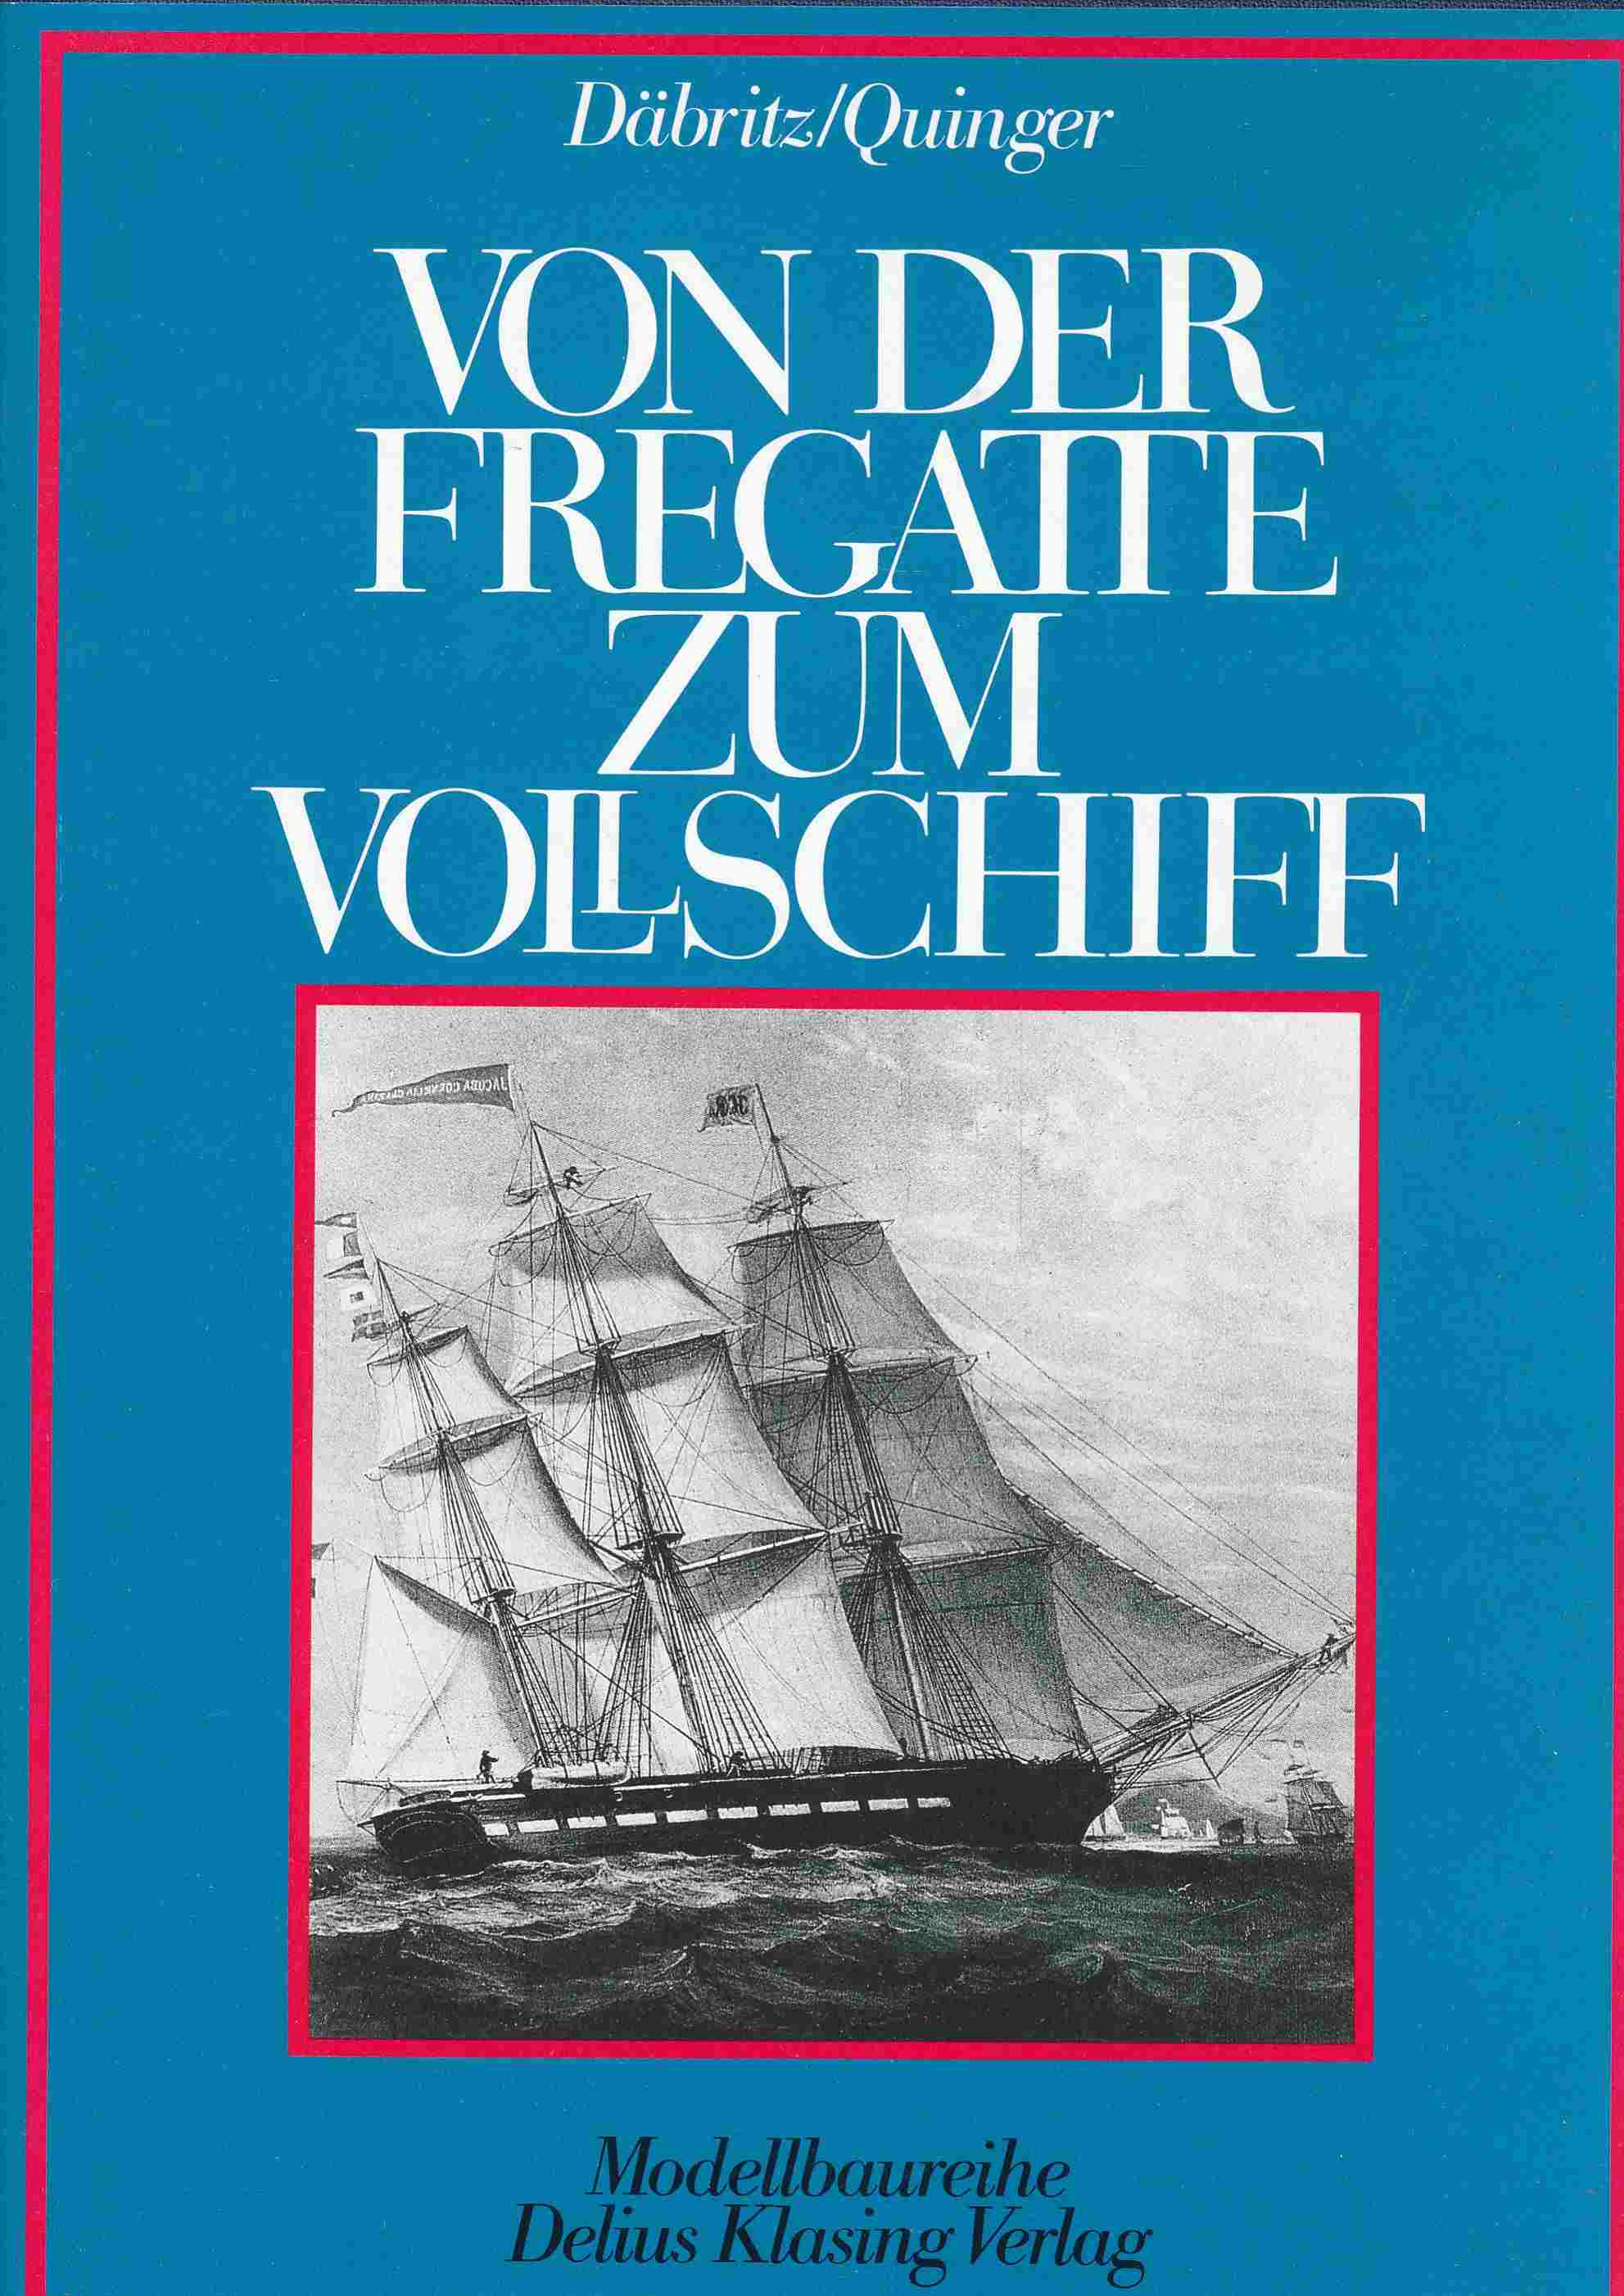 Von der Fregatte zum Vollschiff. Hedewig Eleonora und Alt Mecklenburg. - Rainer Däbritz; Wolfgang Quinger;